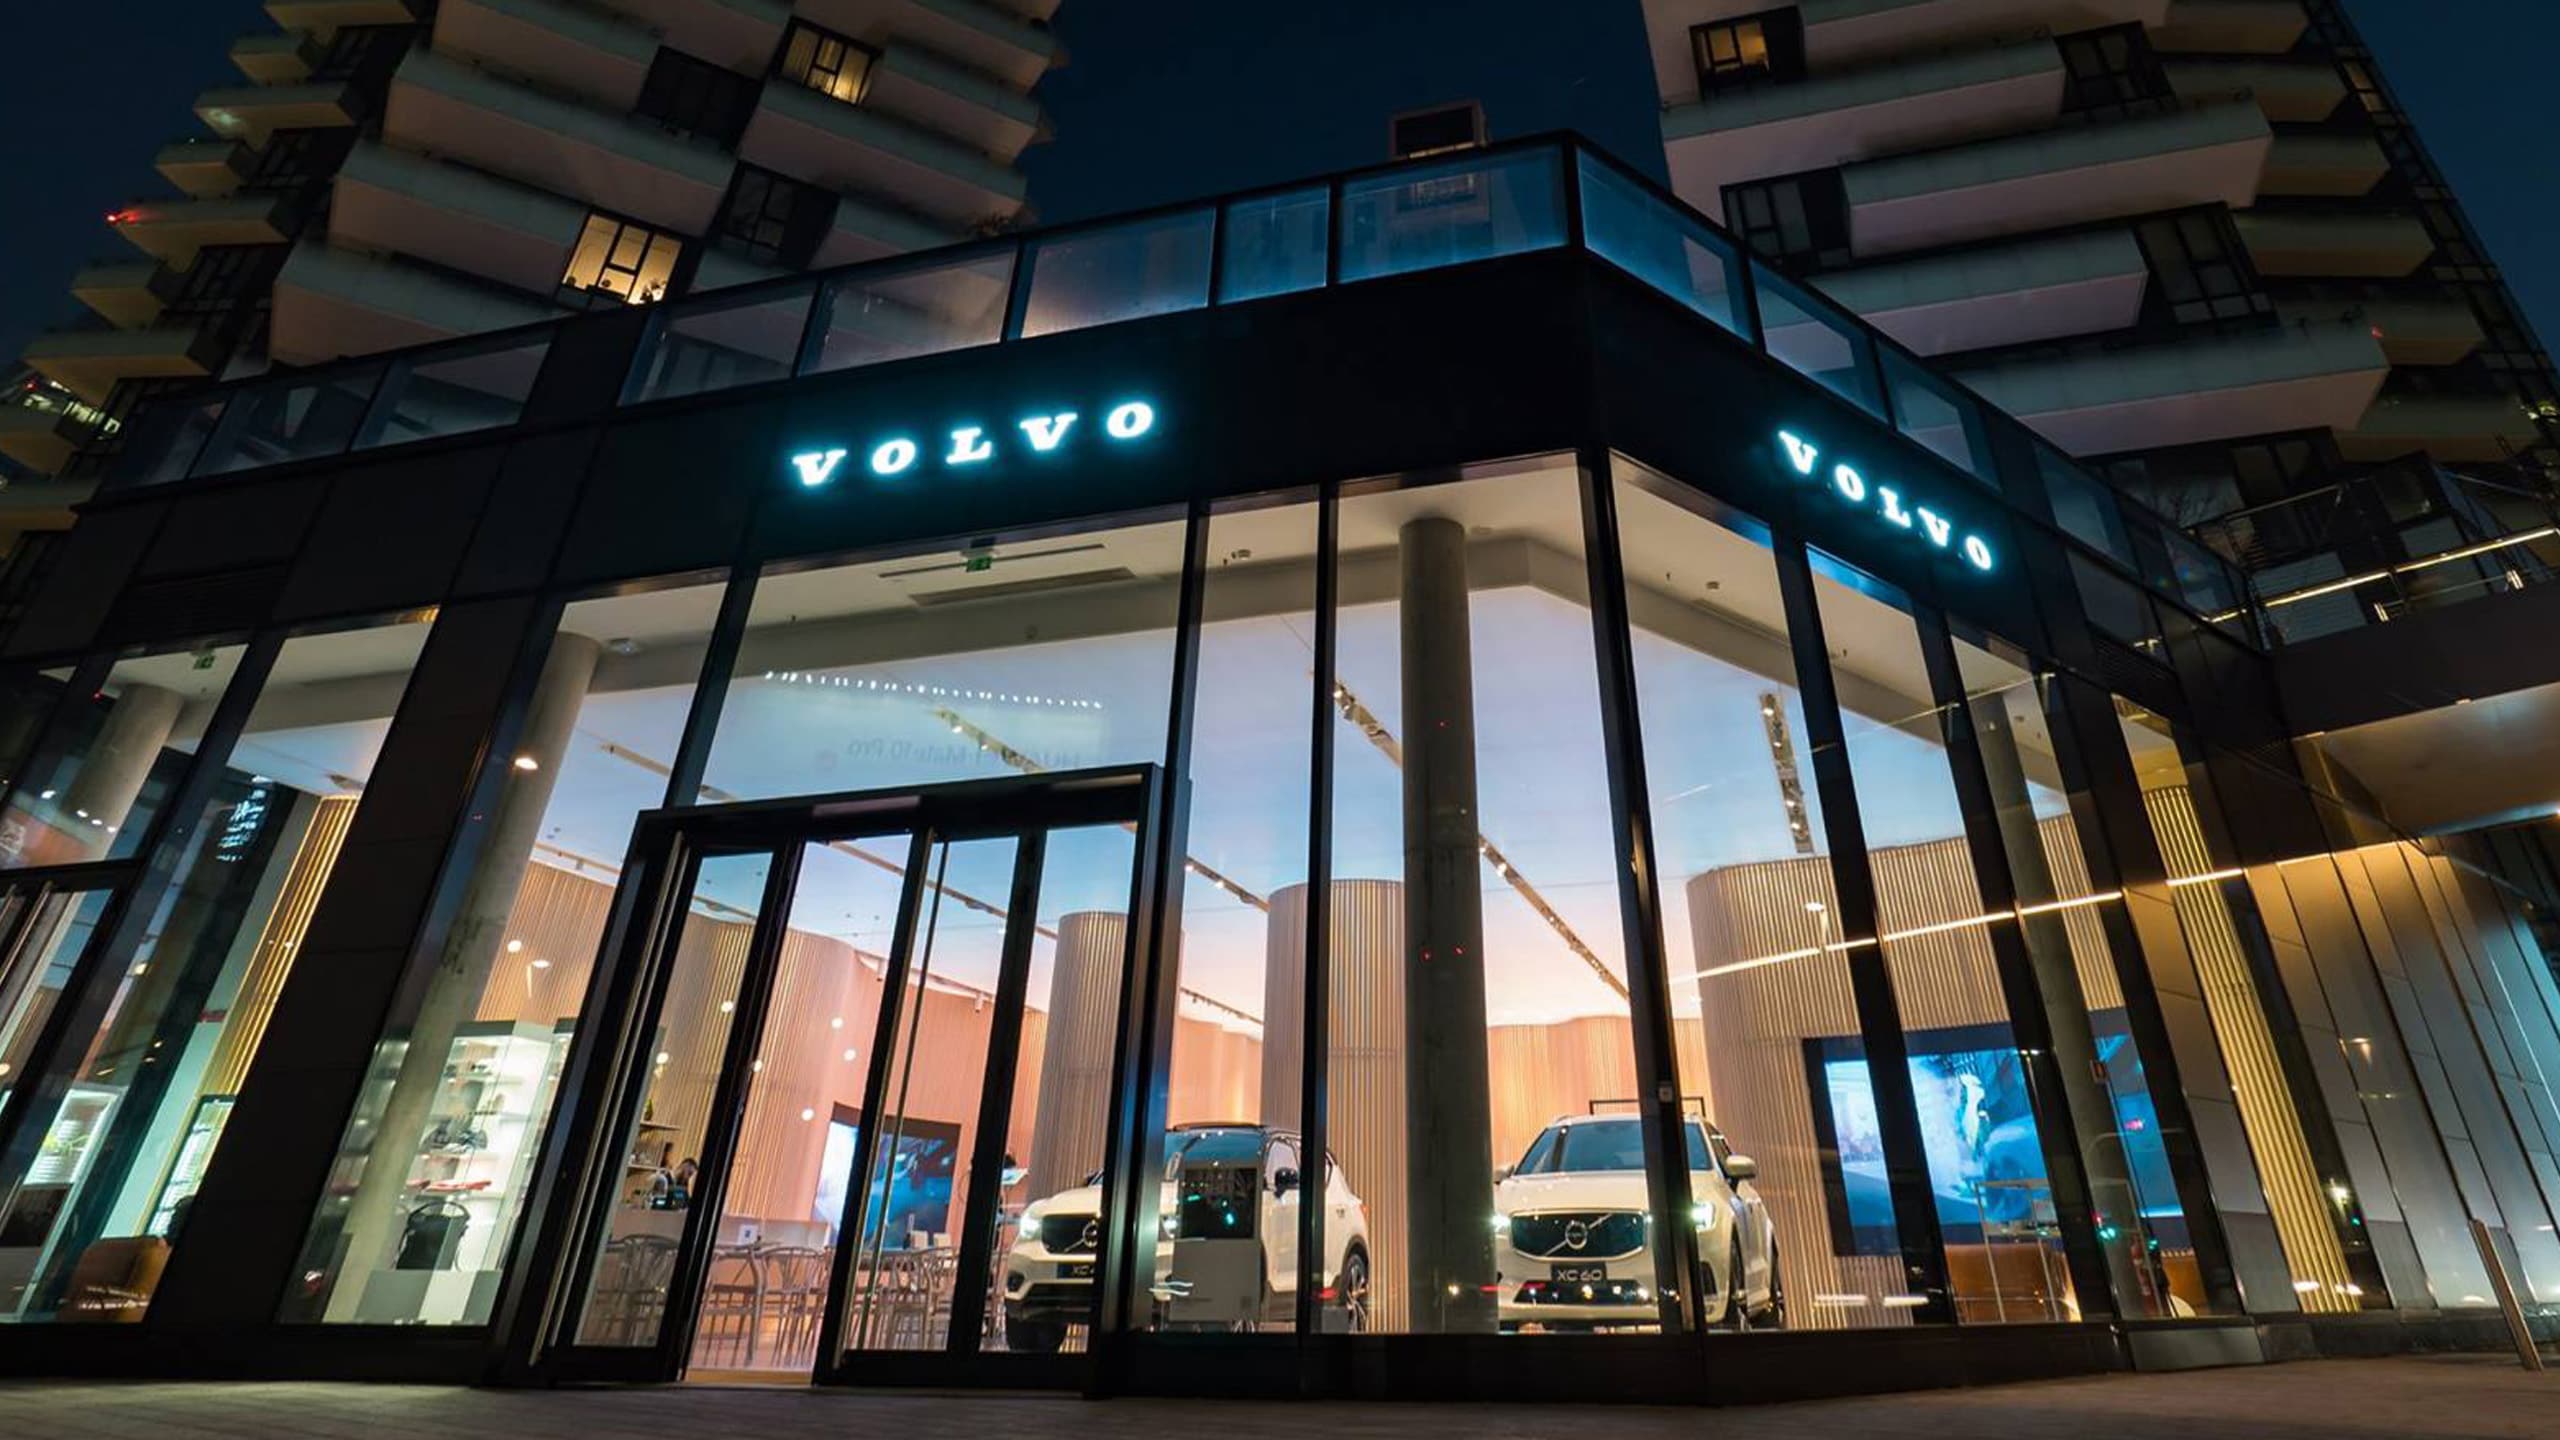 Ingresso Volvo Studio Milano illuminato di notte